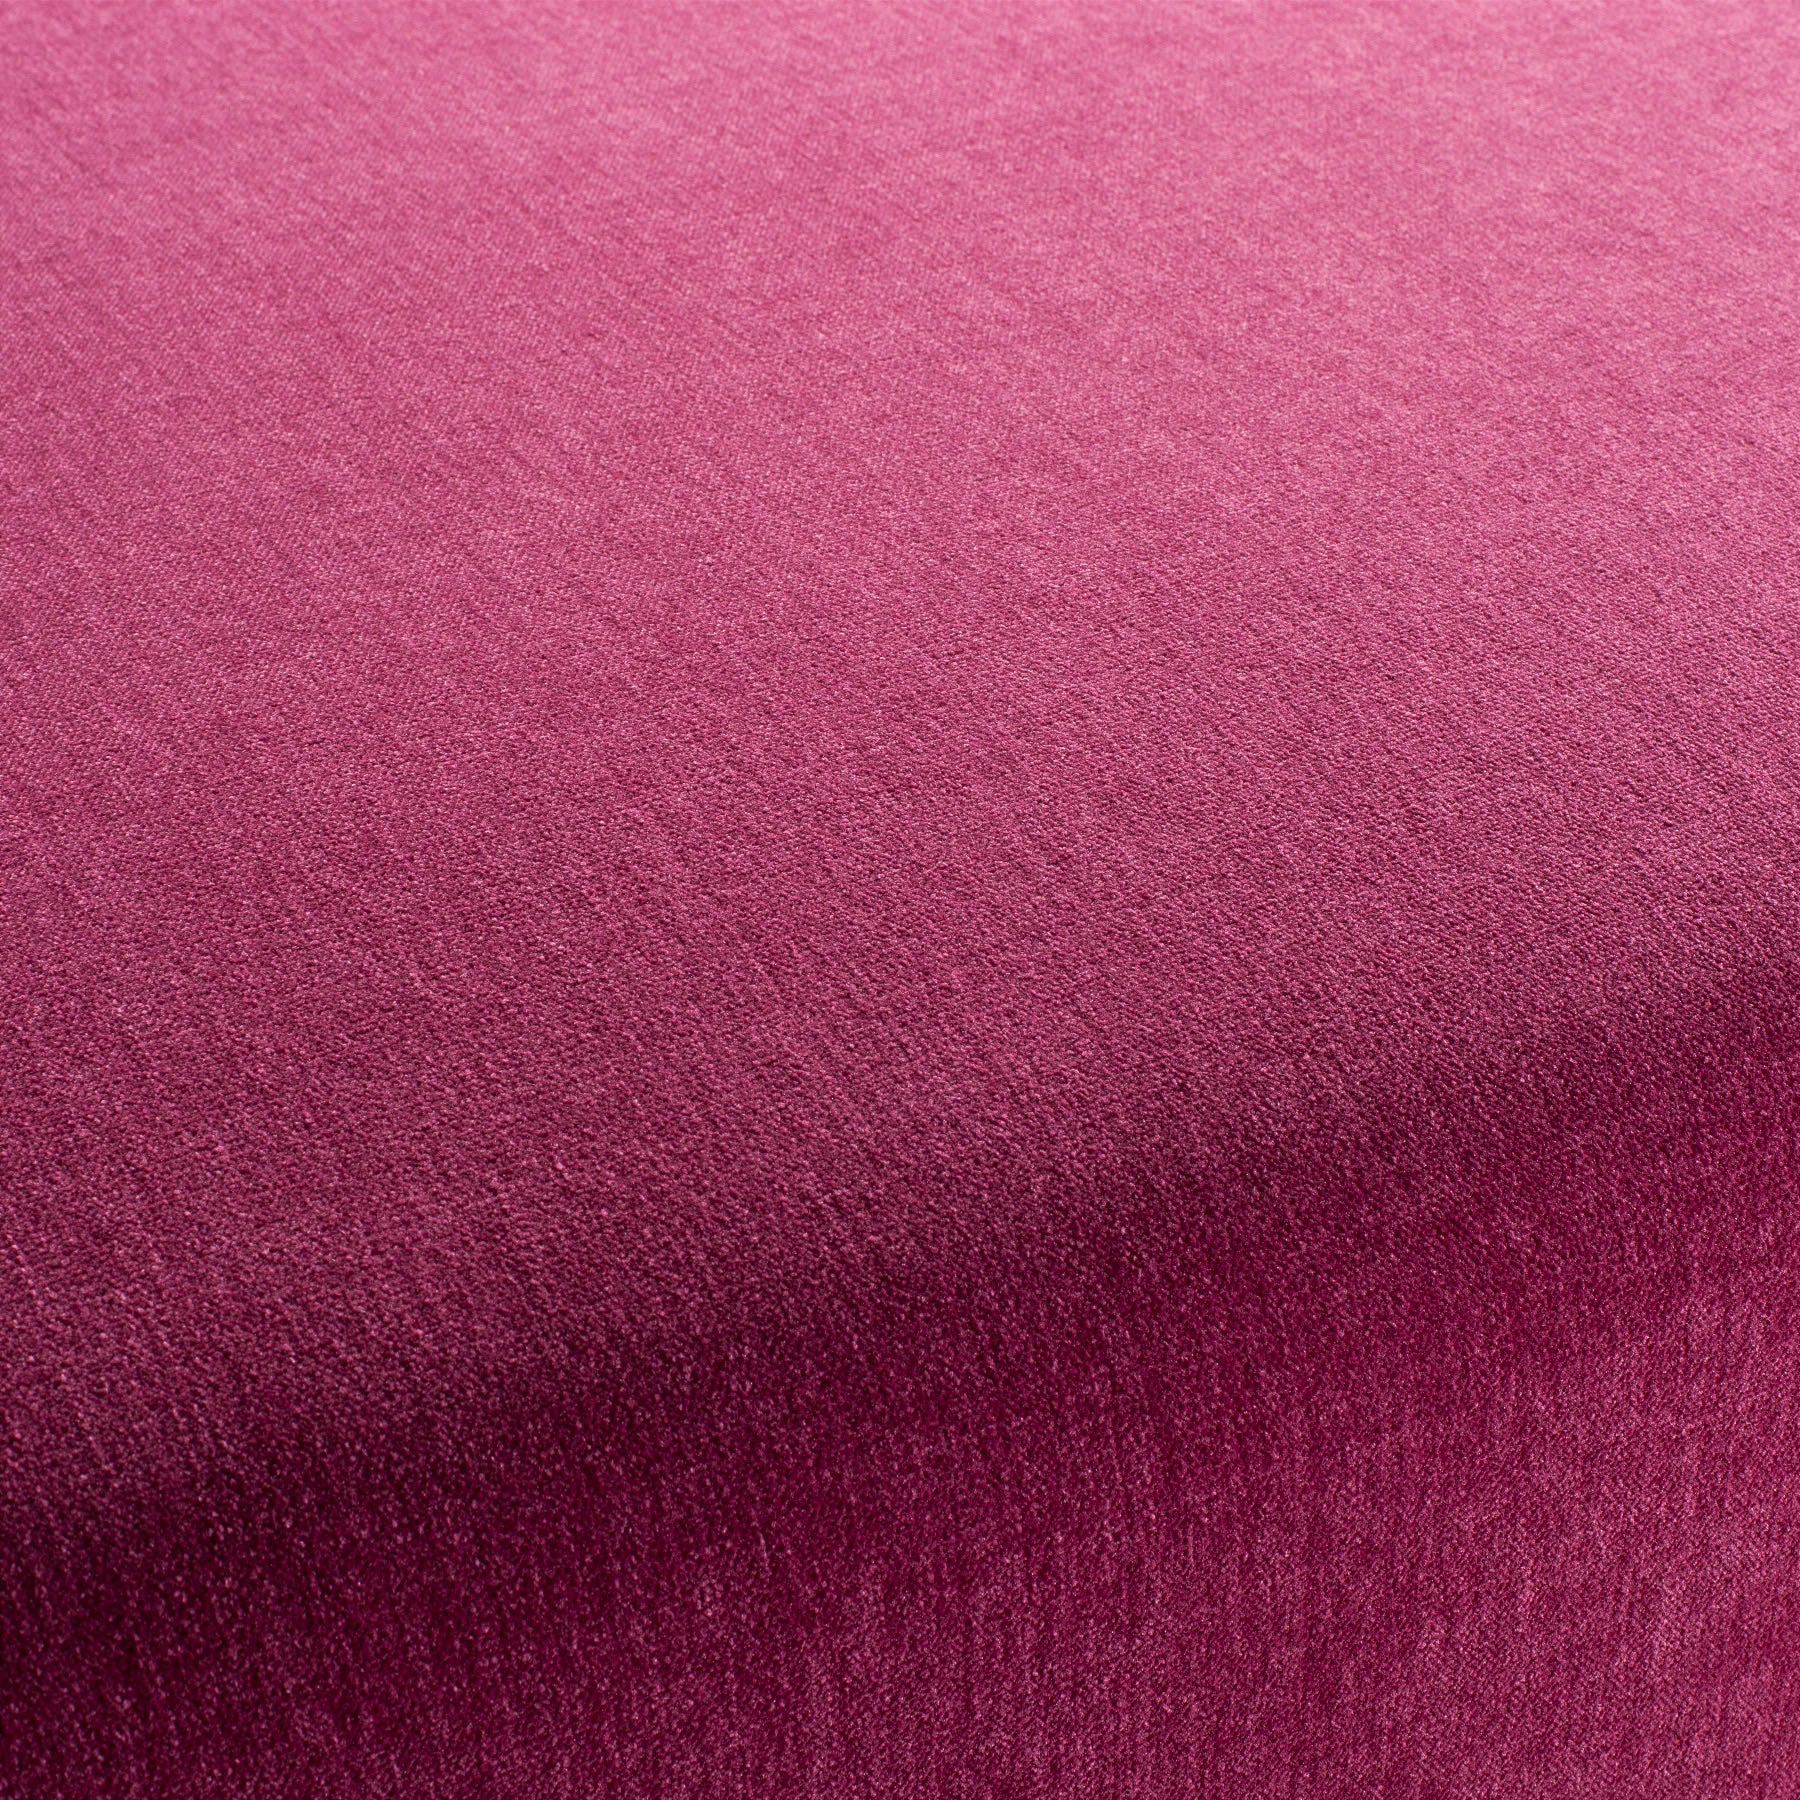 Chenillo 1-1281-069 Fabric